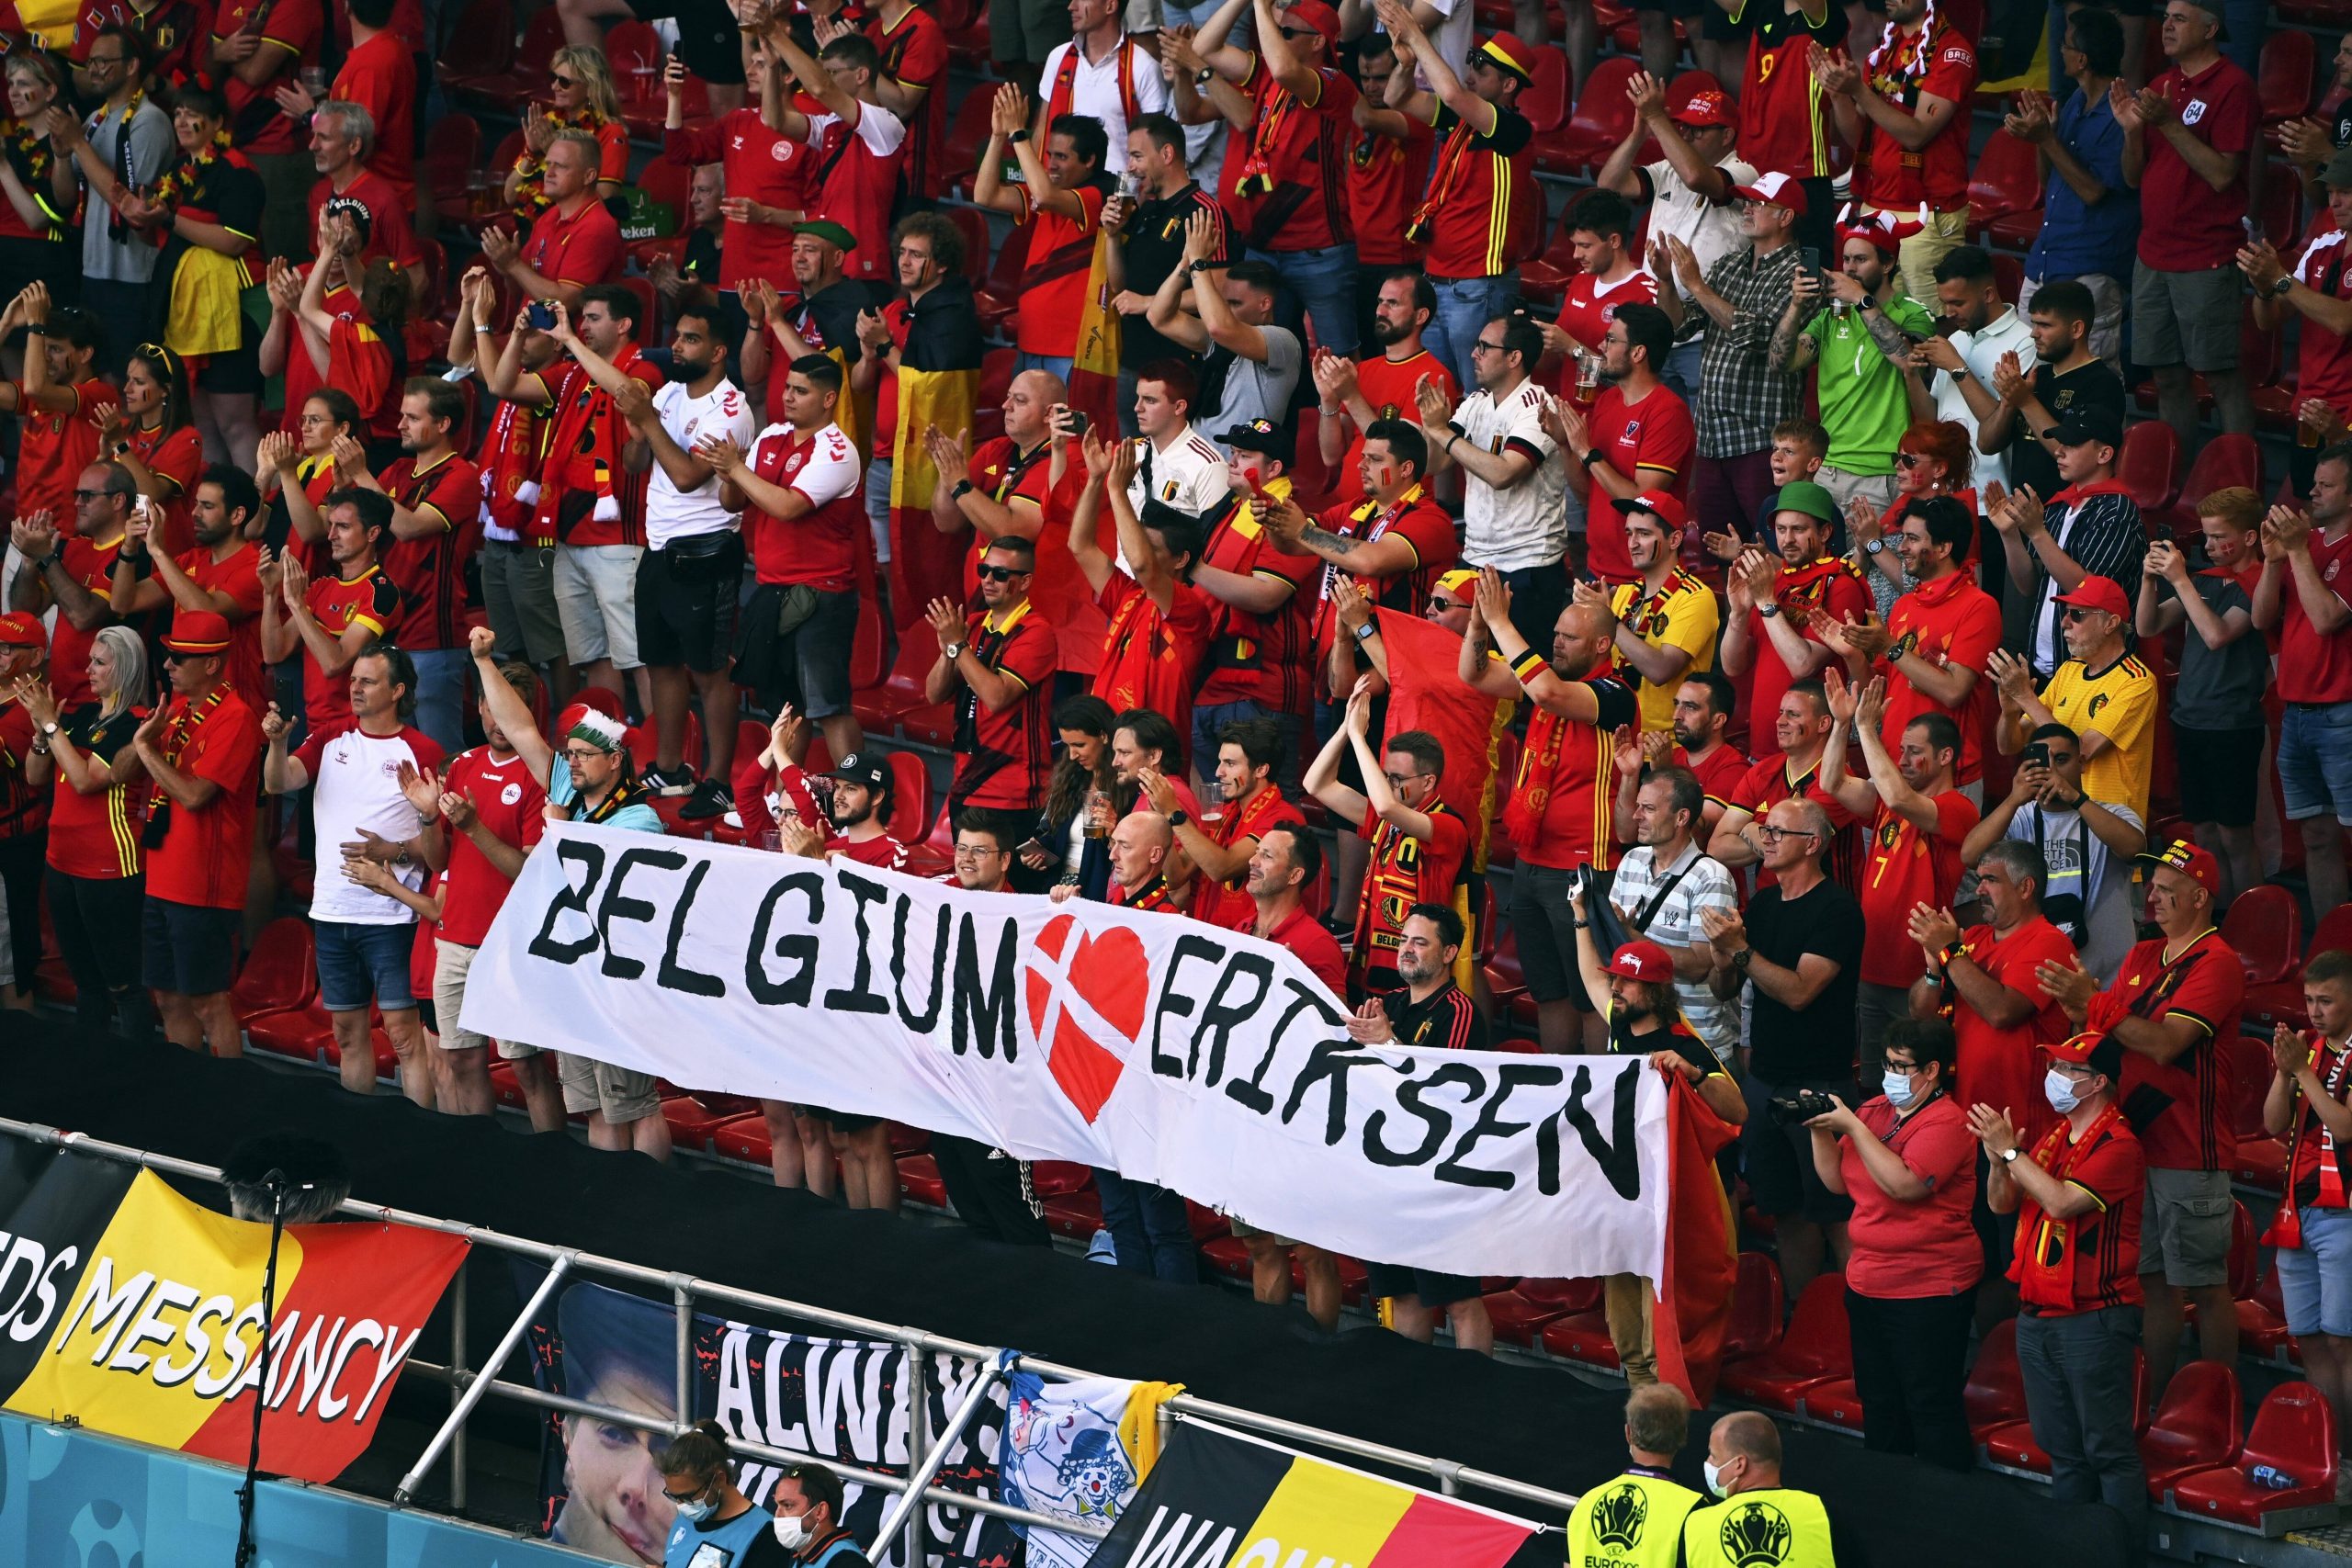 Auch Belgiens Fans hatten Genesungswünsche für Christian Eriksen dabei